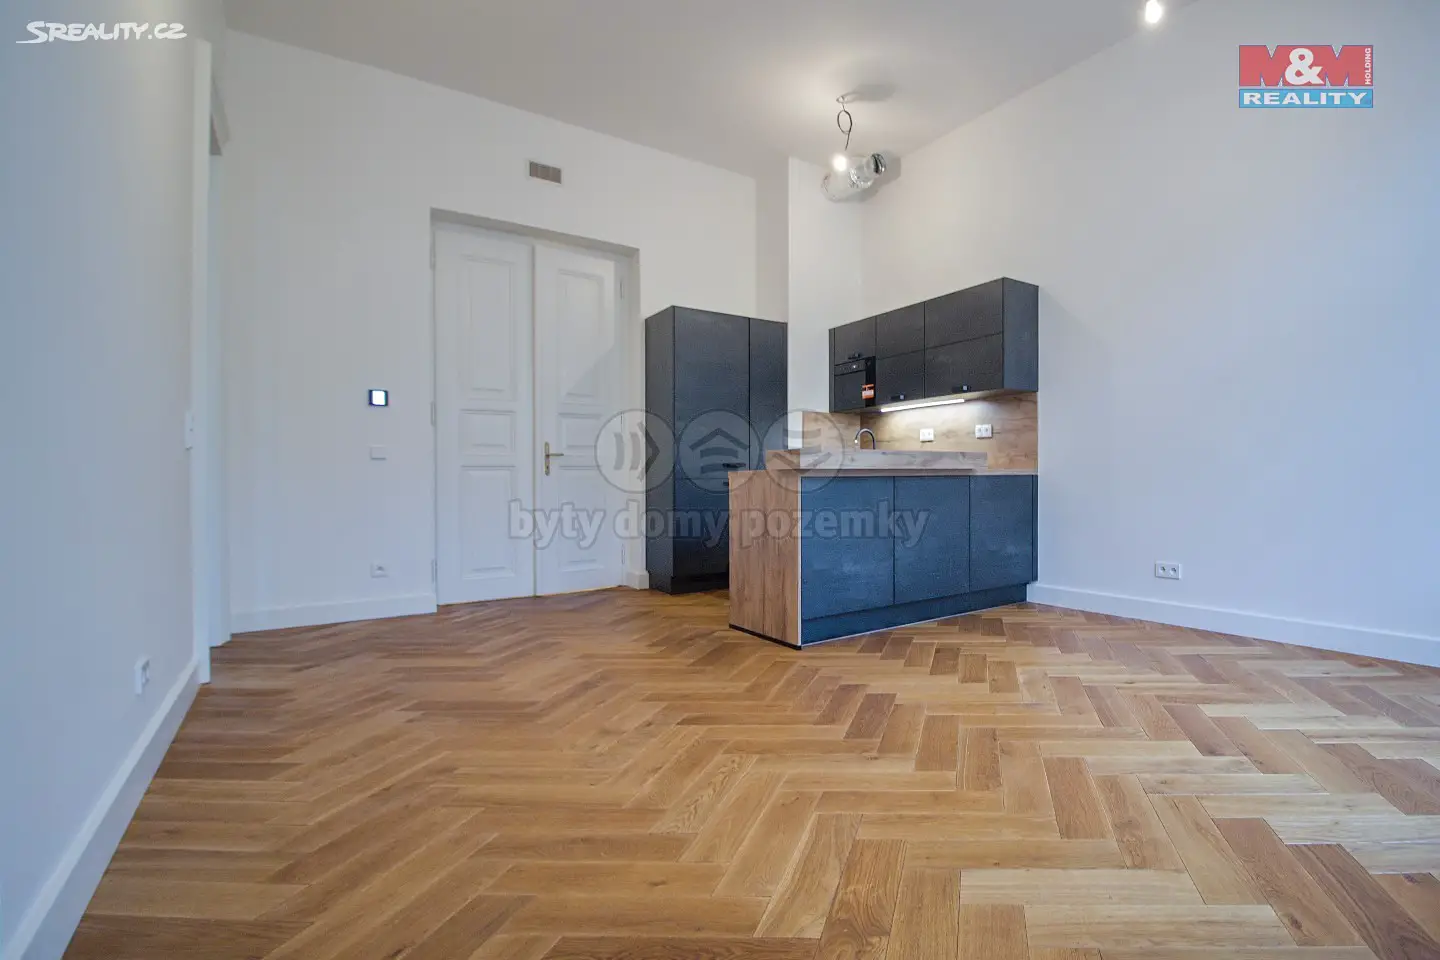 Prodej bytu 2+kk 75 m², Dlážděná, Praha 1 - Nové Město